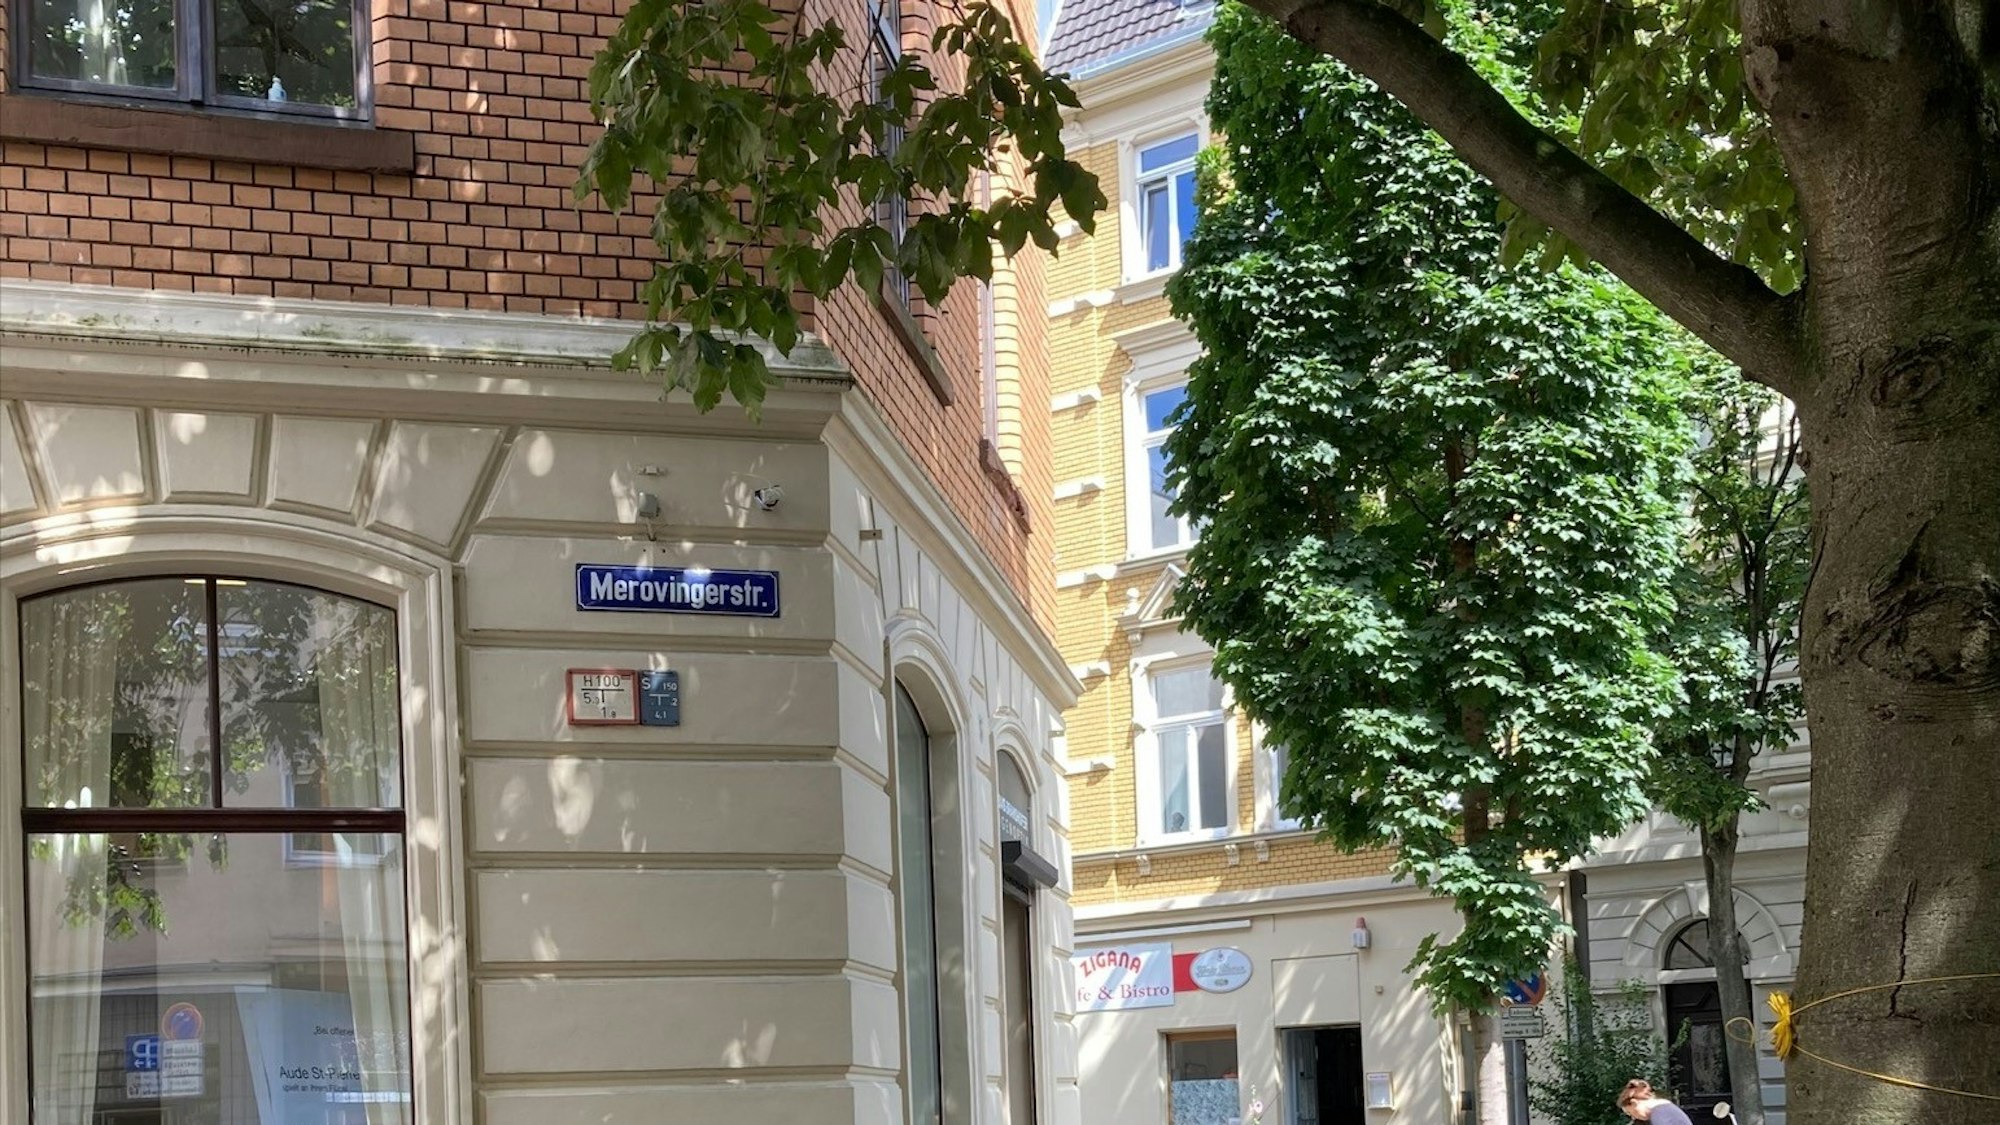 In der Merowingerstraße gibt es ein Schild mit anderer Schreibweise, hier heißt es Merovingerstraße. Bei den blauen Straßennamensschildern handelt es sich um eine historische Beschilderung.